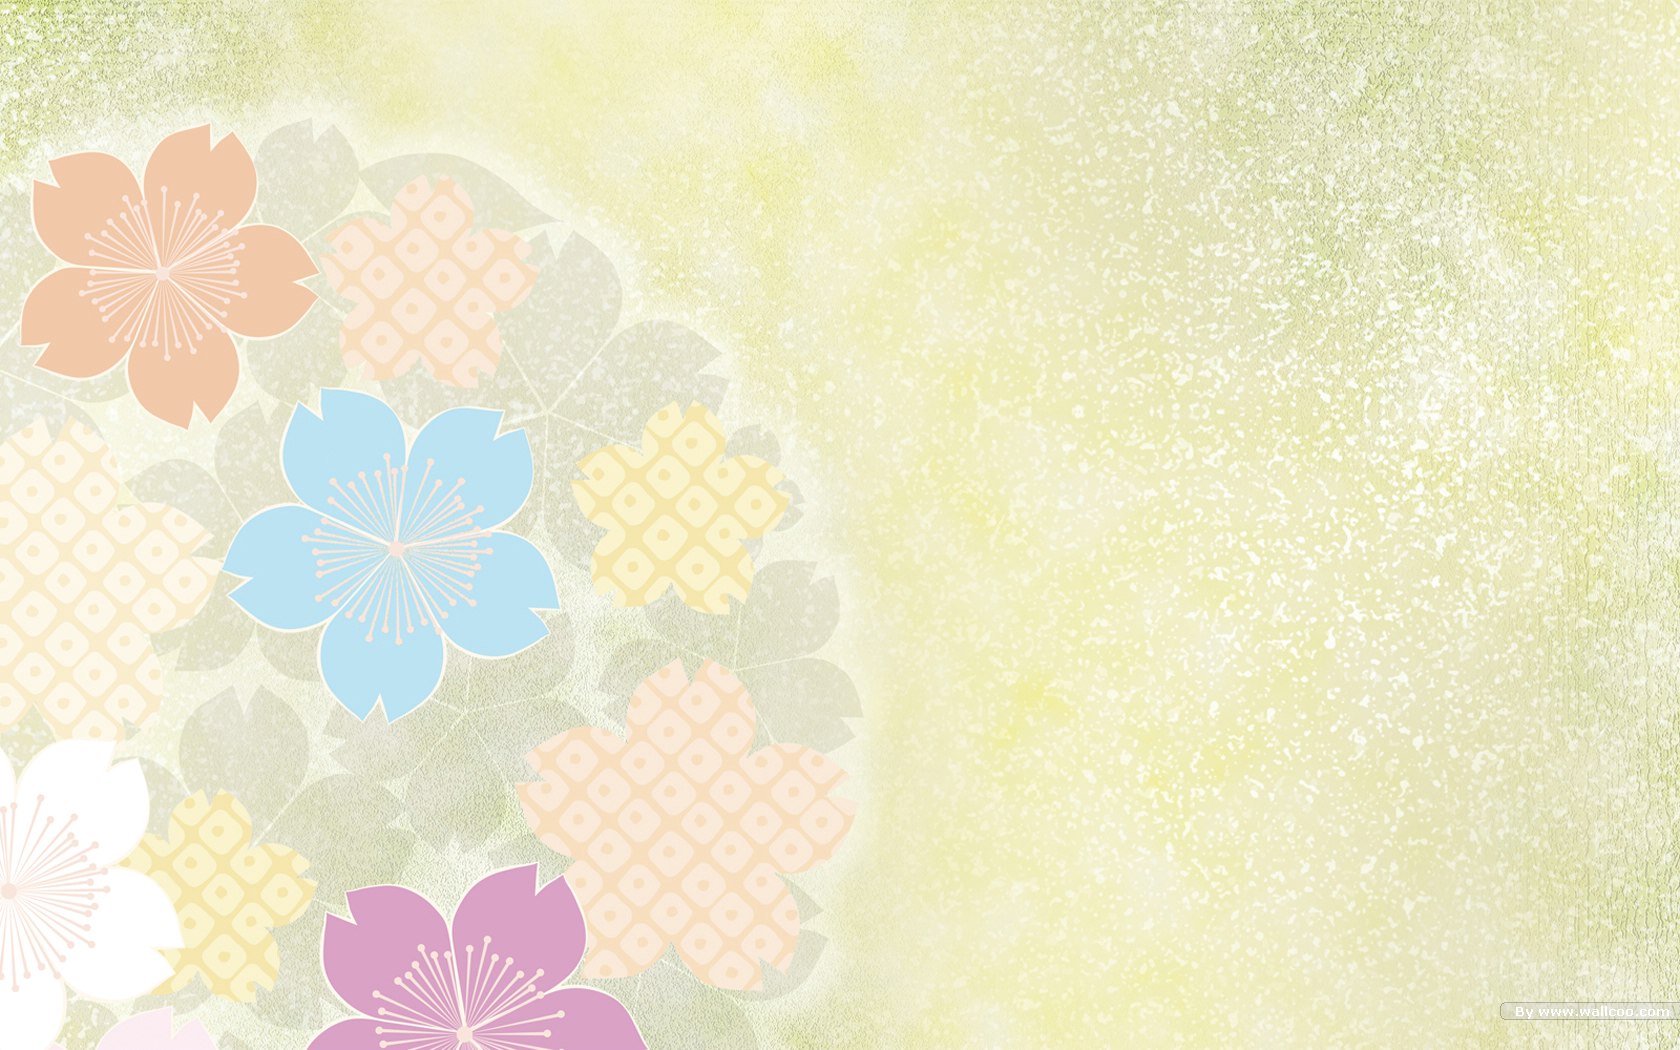 壁纸1680x1050日本风格色彩与图案设计壁纸 甜美浪漫 日本风格色彩图案壁纸 日本风格色彩设计壁纸 日本风格色彩设计图片 日本风格色彩设计素材 插画壁纸 插画图库 插画图片素材桌面壁纸